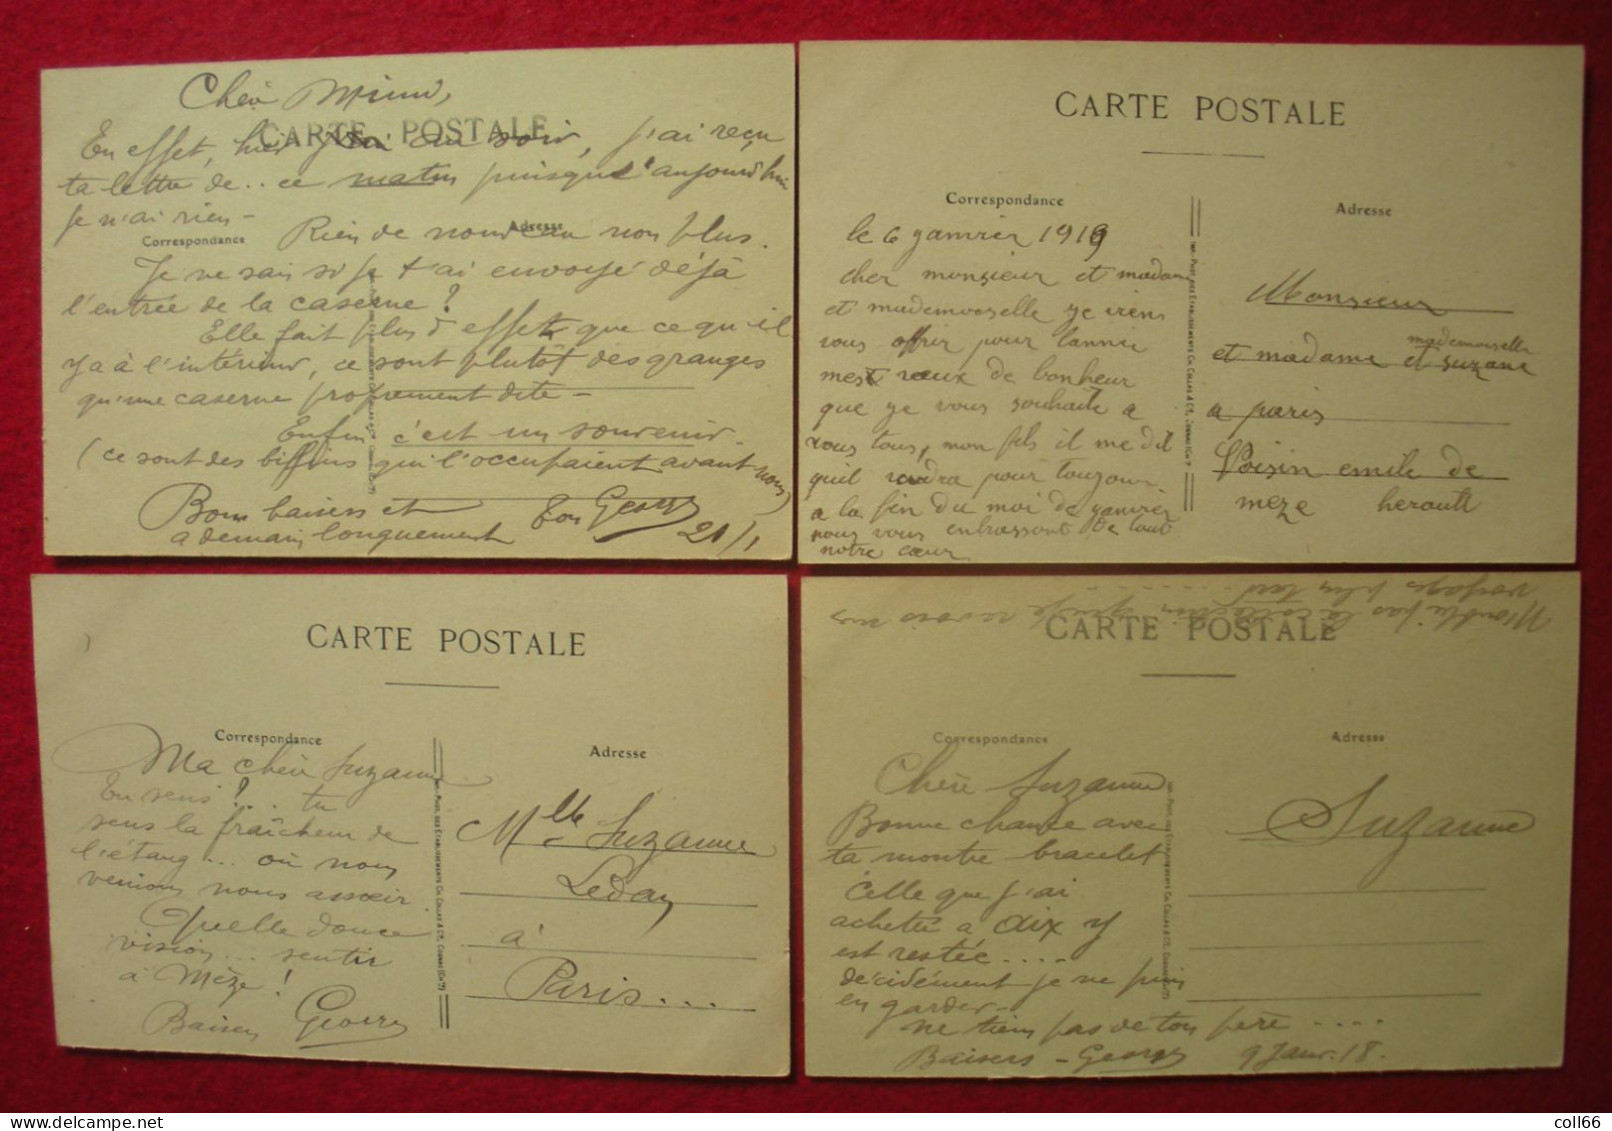 34 Mèze 1918-19 Lot de 15 cartes à saisir dont très animée éditeur BD  Ets Collas Cognac dos scanné